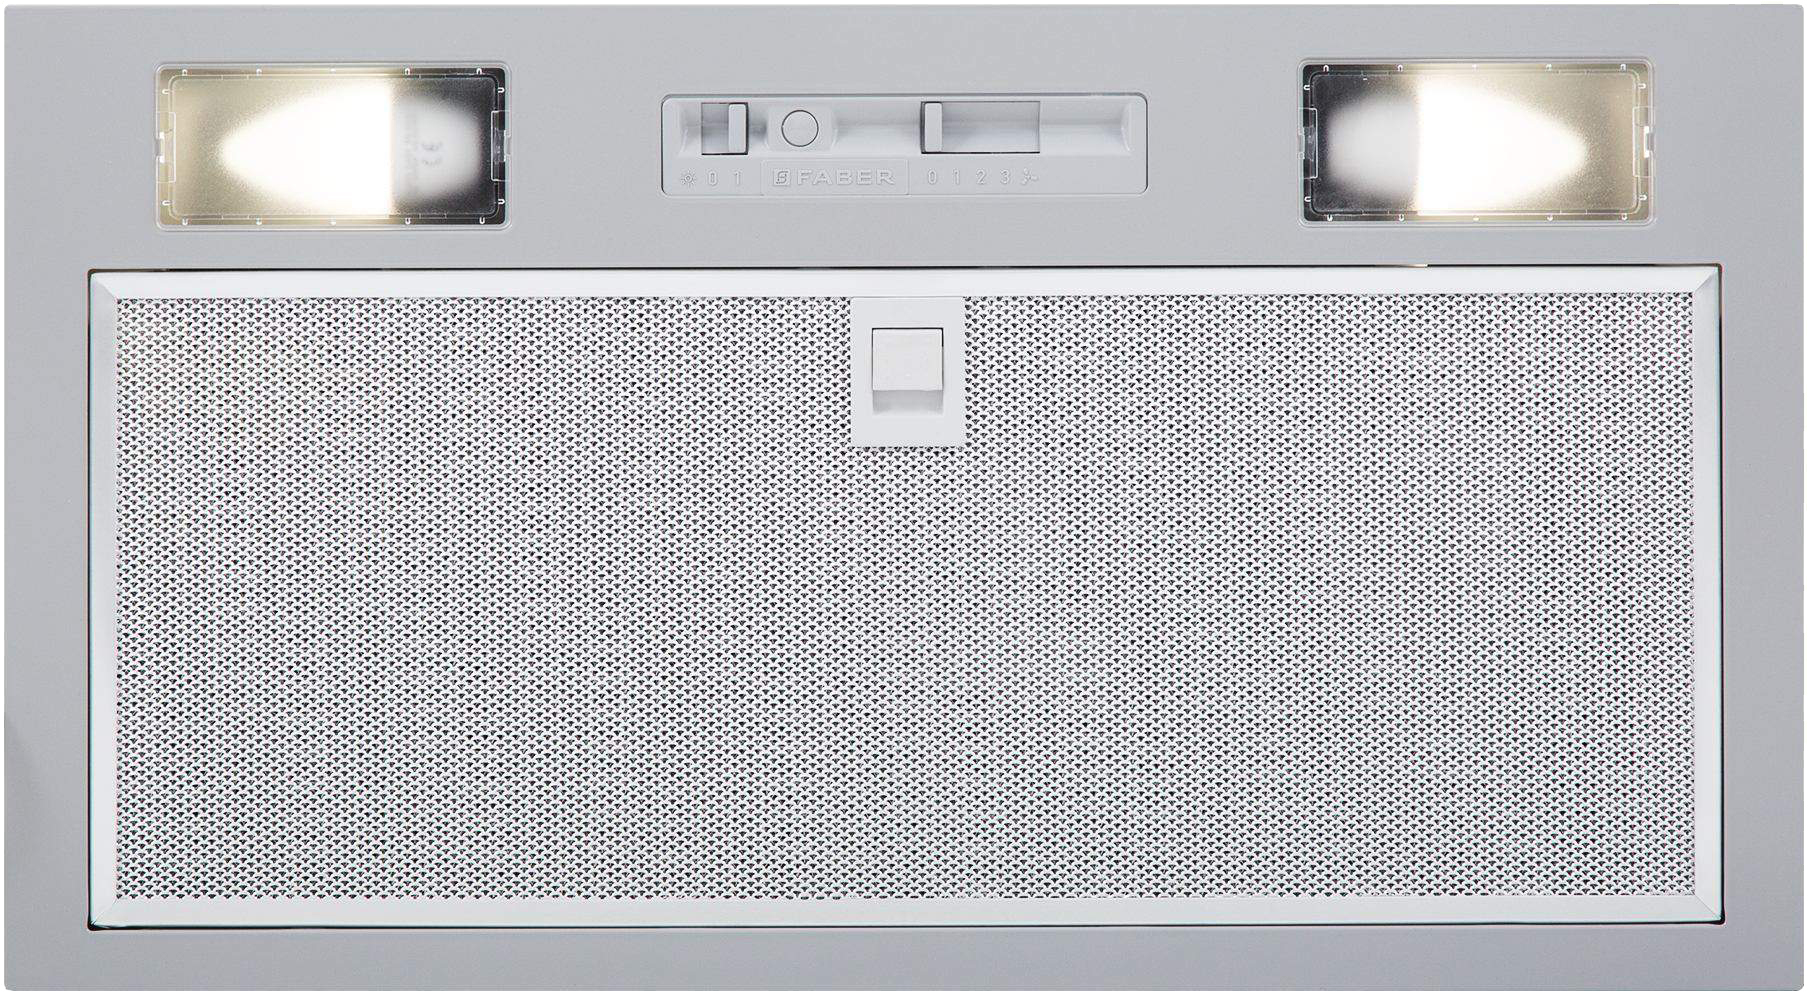 Кухонная вытяжка Faber Inka Smart C LG A52 в интернет-магазине, главное фото